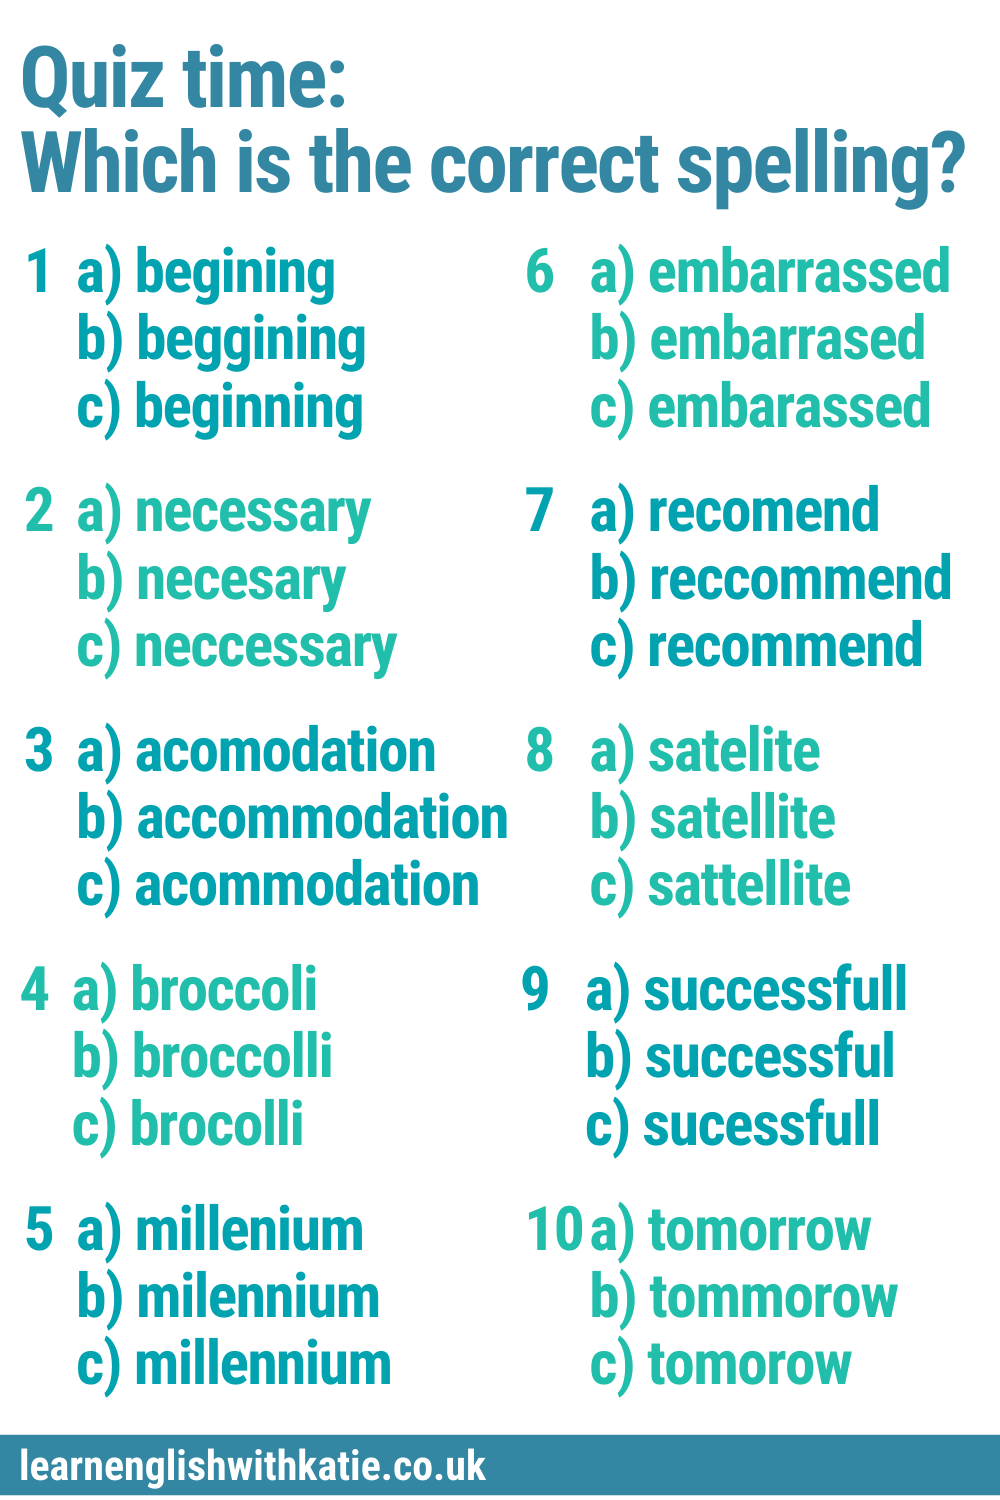 Spelling quiz Pinterest pin